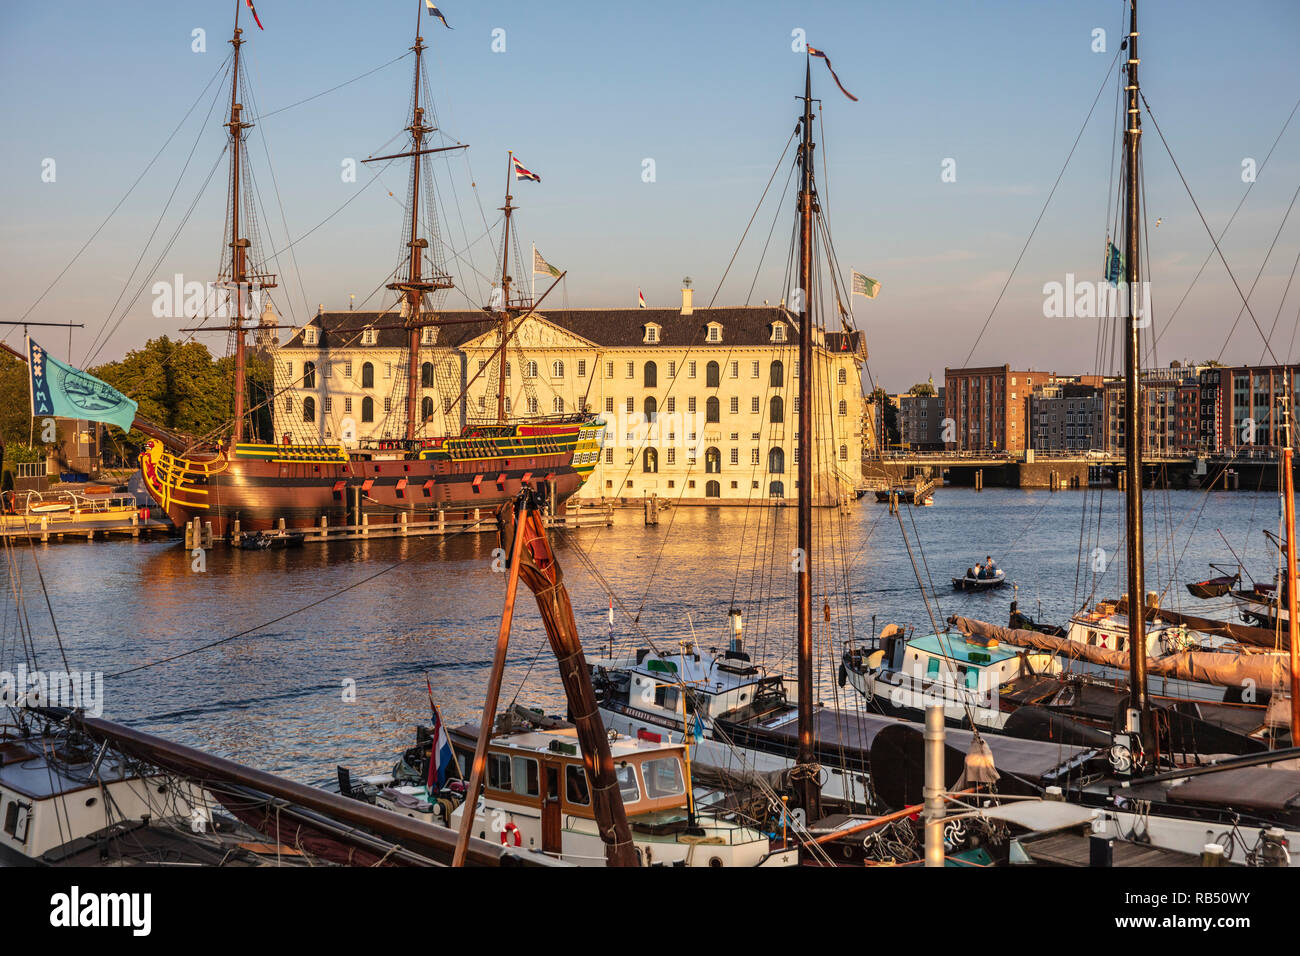 Die Niederlande, Amsterdam. Scheepvaartmuseum. National Maritime Museum und Replik von VOC-Schiff De Amsterdam. Stockfoto